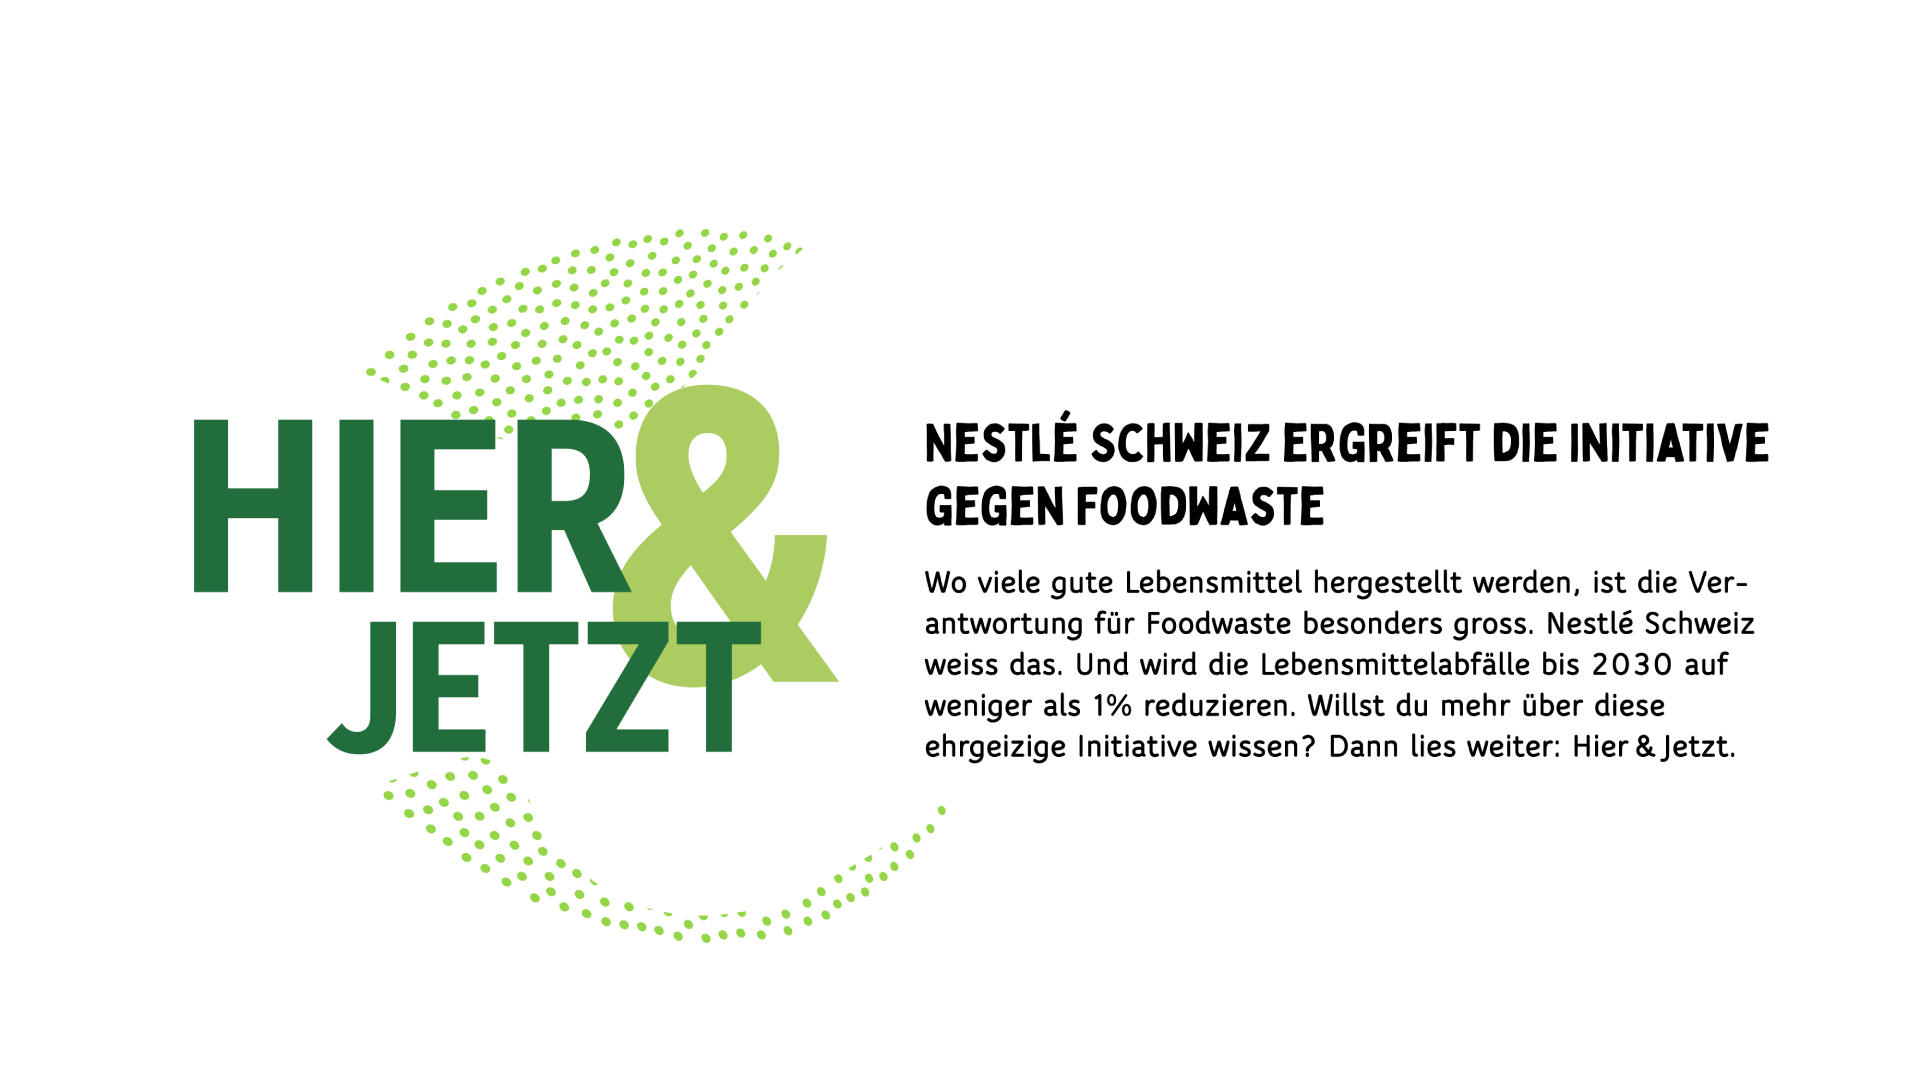 Nestlé schweiz ergreift die initiative gegen foodwaste